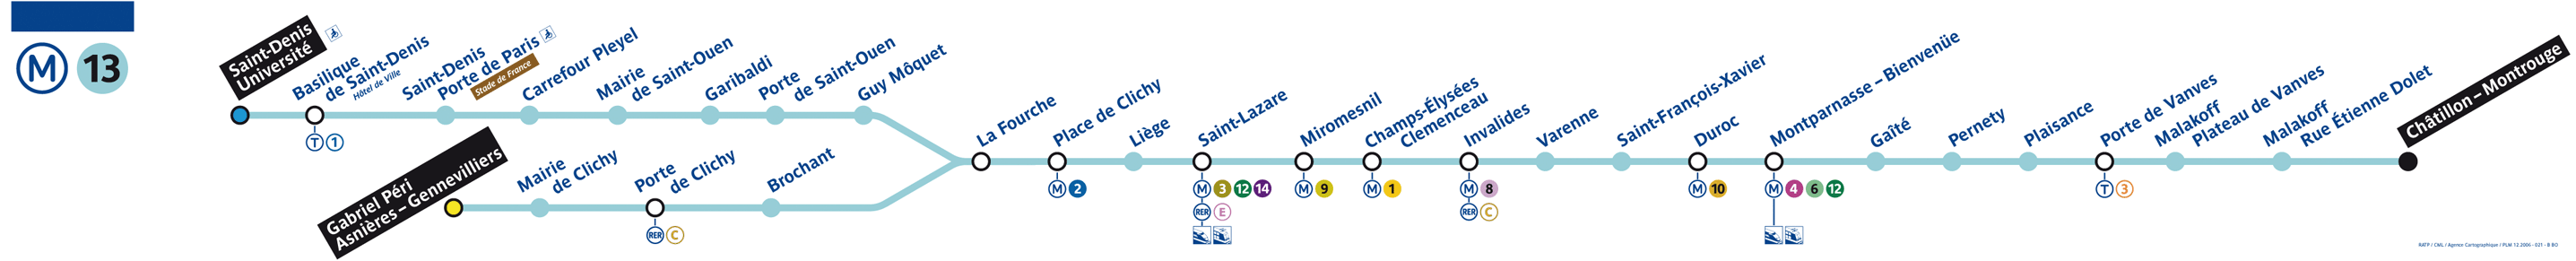 Plan ligne 13 métro de Paris